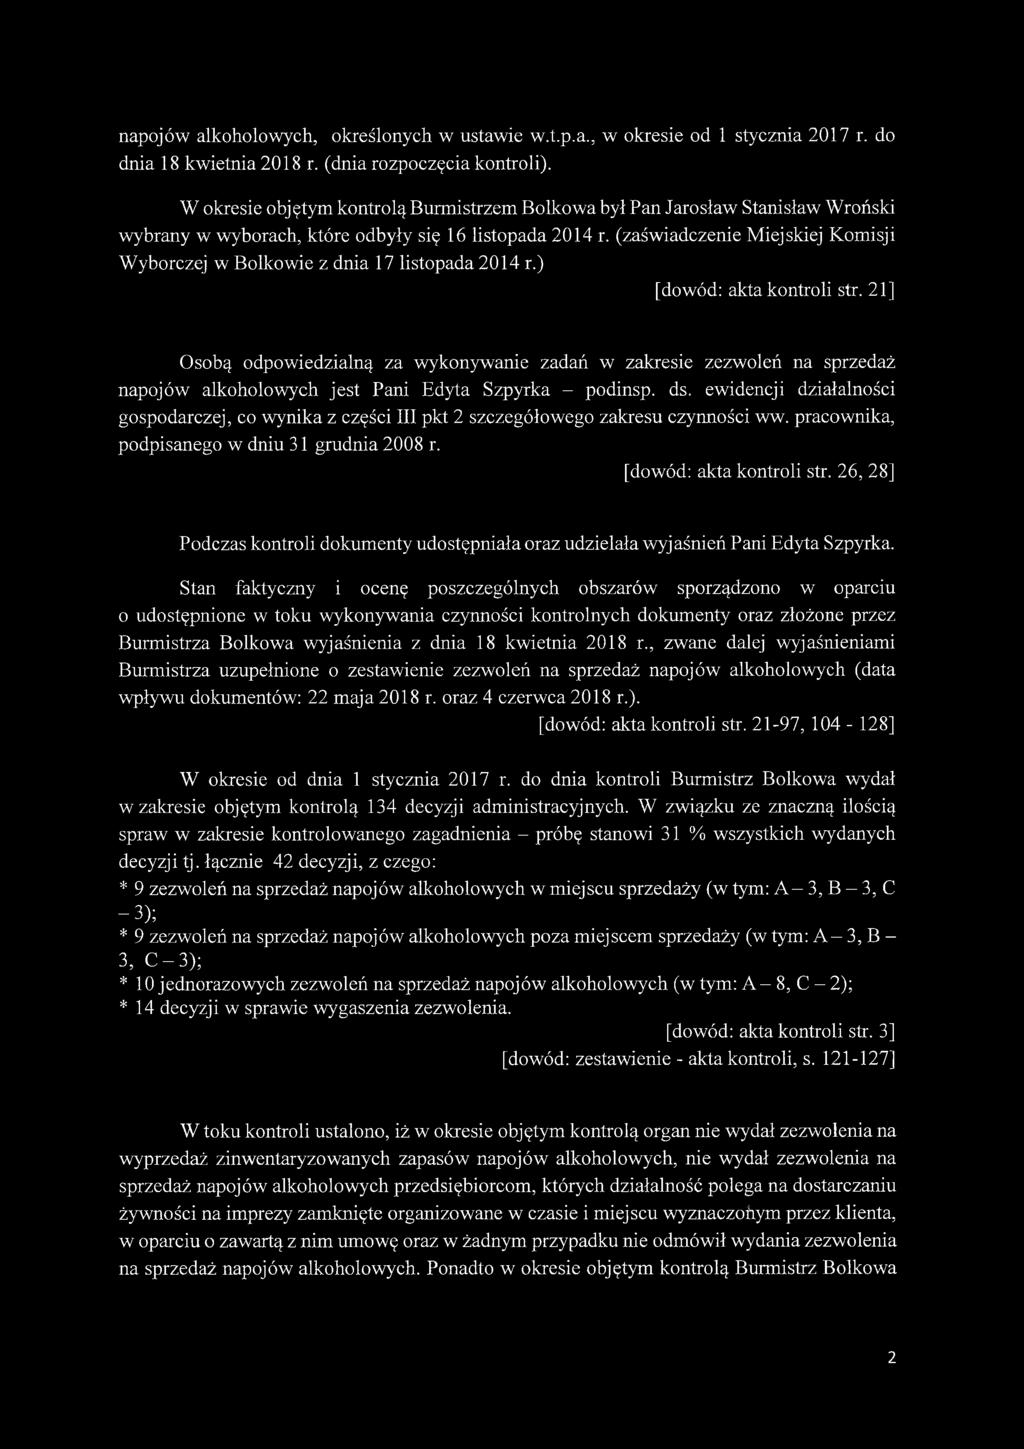 (zaświadczenie Miejskiej Komisji Wyborczej w Bolkowie z dnia 17 listopada 2014 r.) [dowód: akta kontroli str.